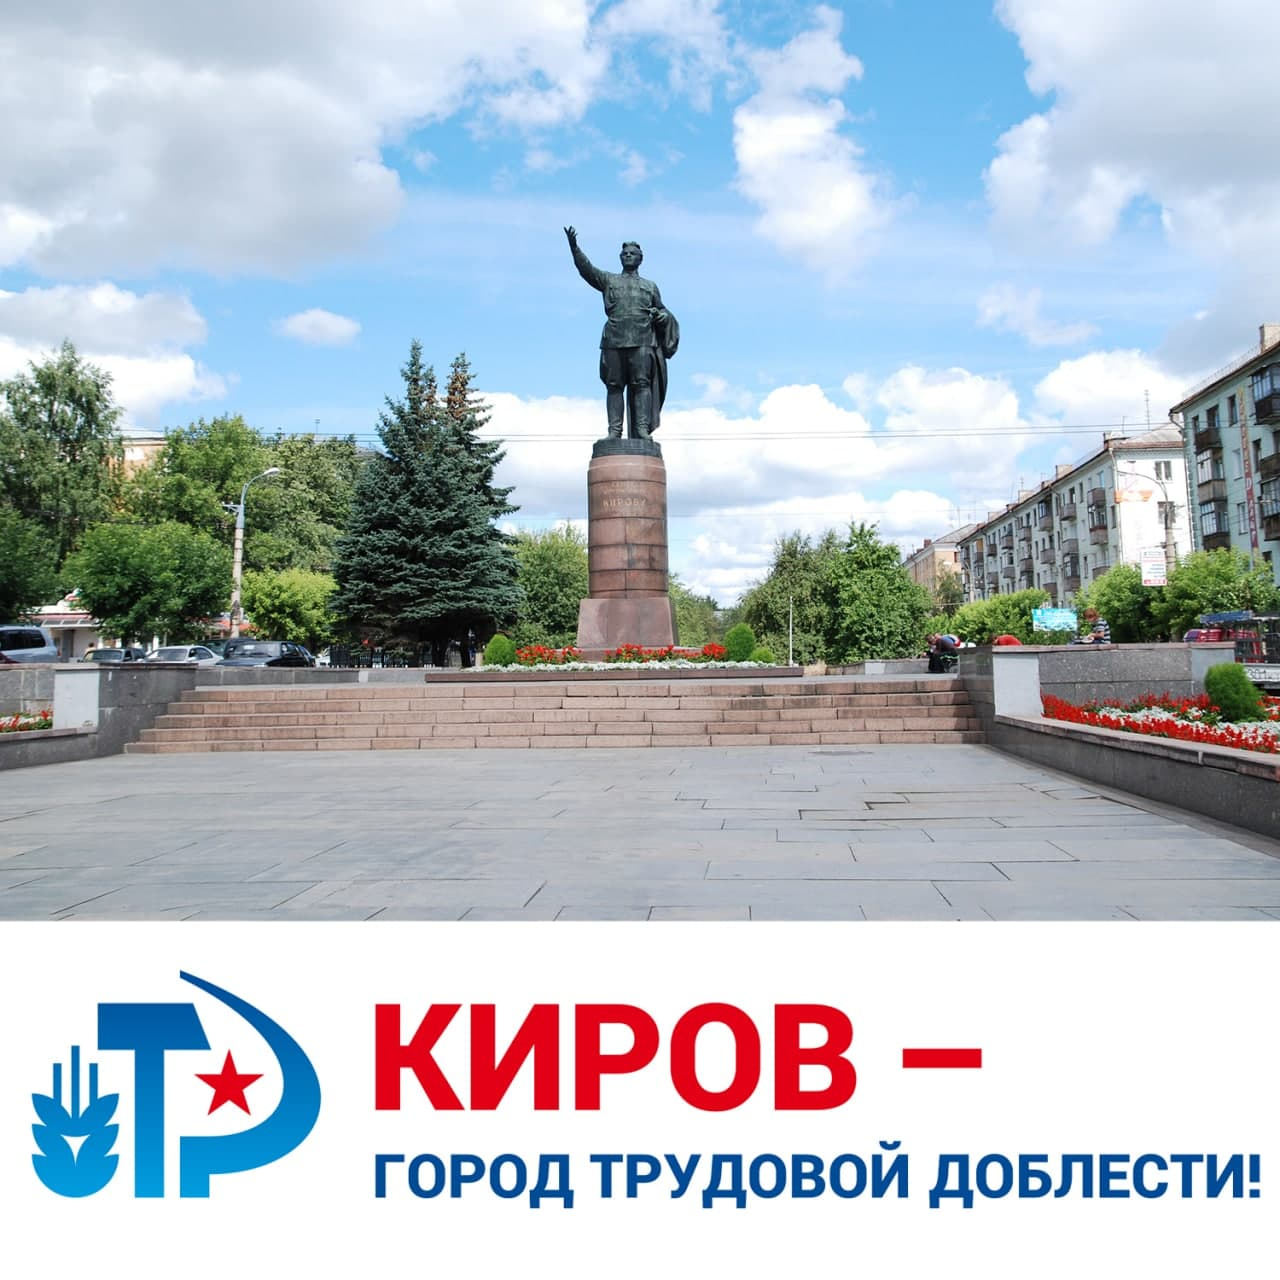 Путин присвоил Кирову звание «Город трудовой доблести»: что изменится